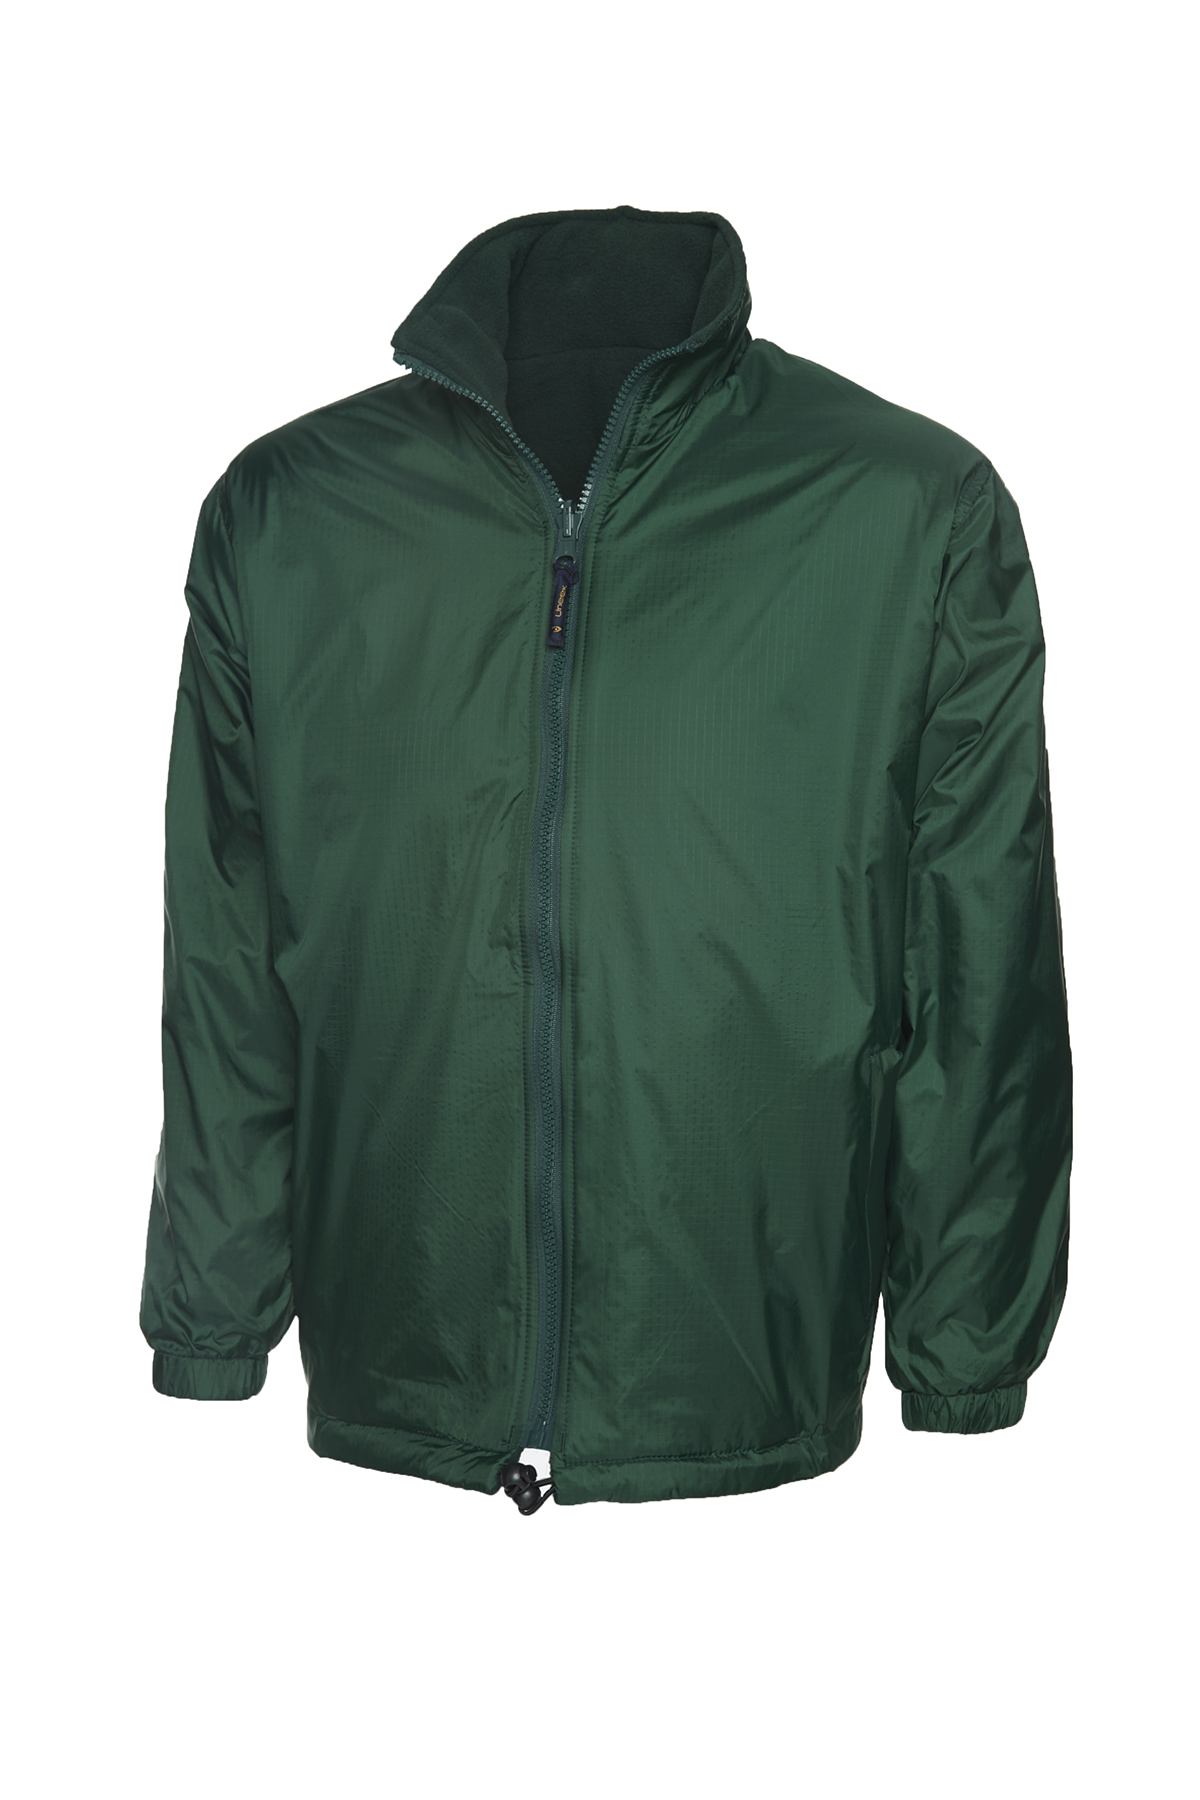 Uneek Premium Reversible Fleece Jackets